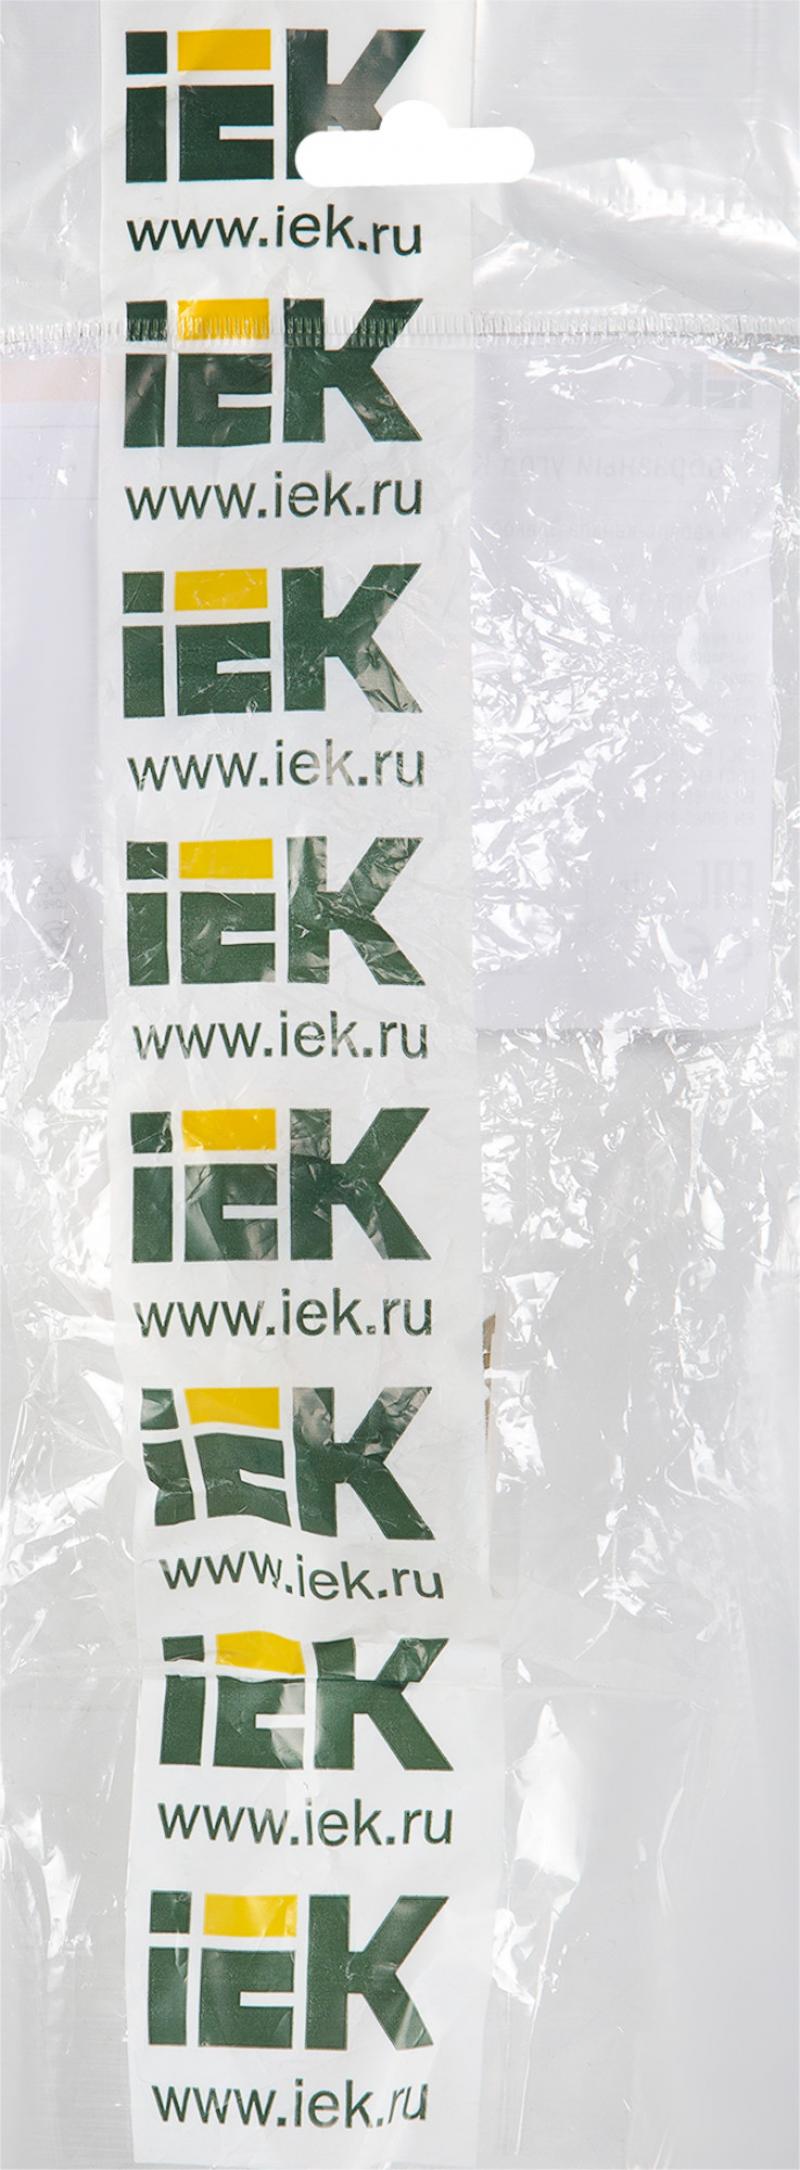 Кабель-арнаға арналған үшайыр IEK КМТ  16х16 мм түсі ақ 4 дана